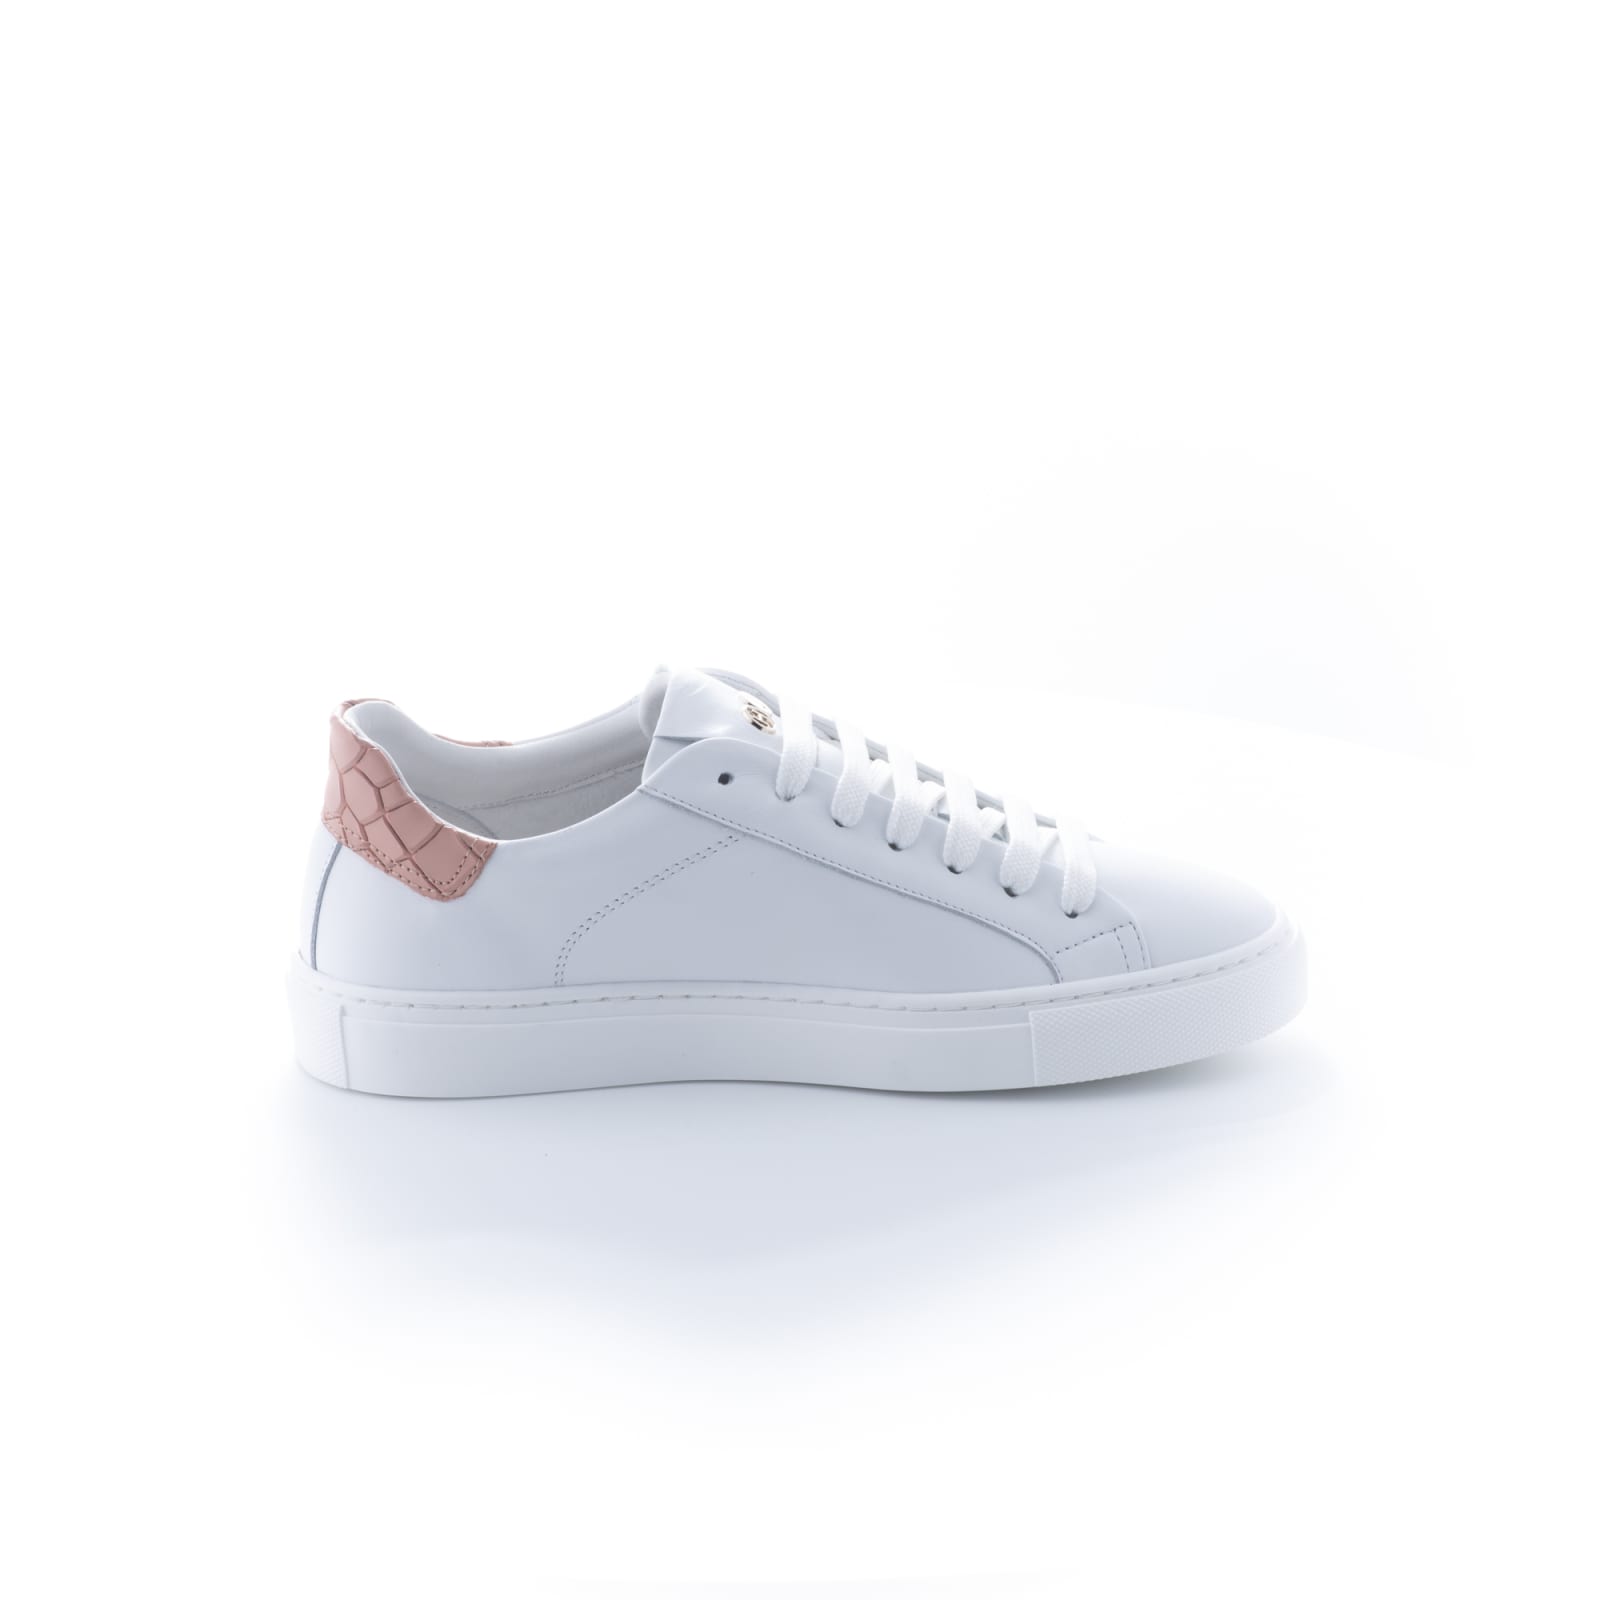 Hide & Jack Sky Pink White Sneakers